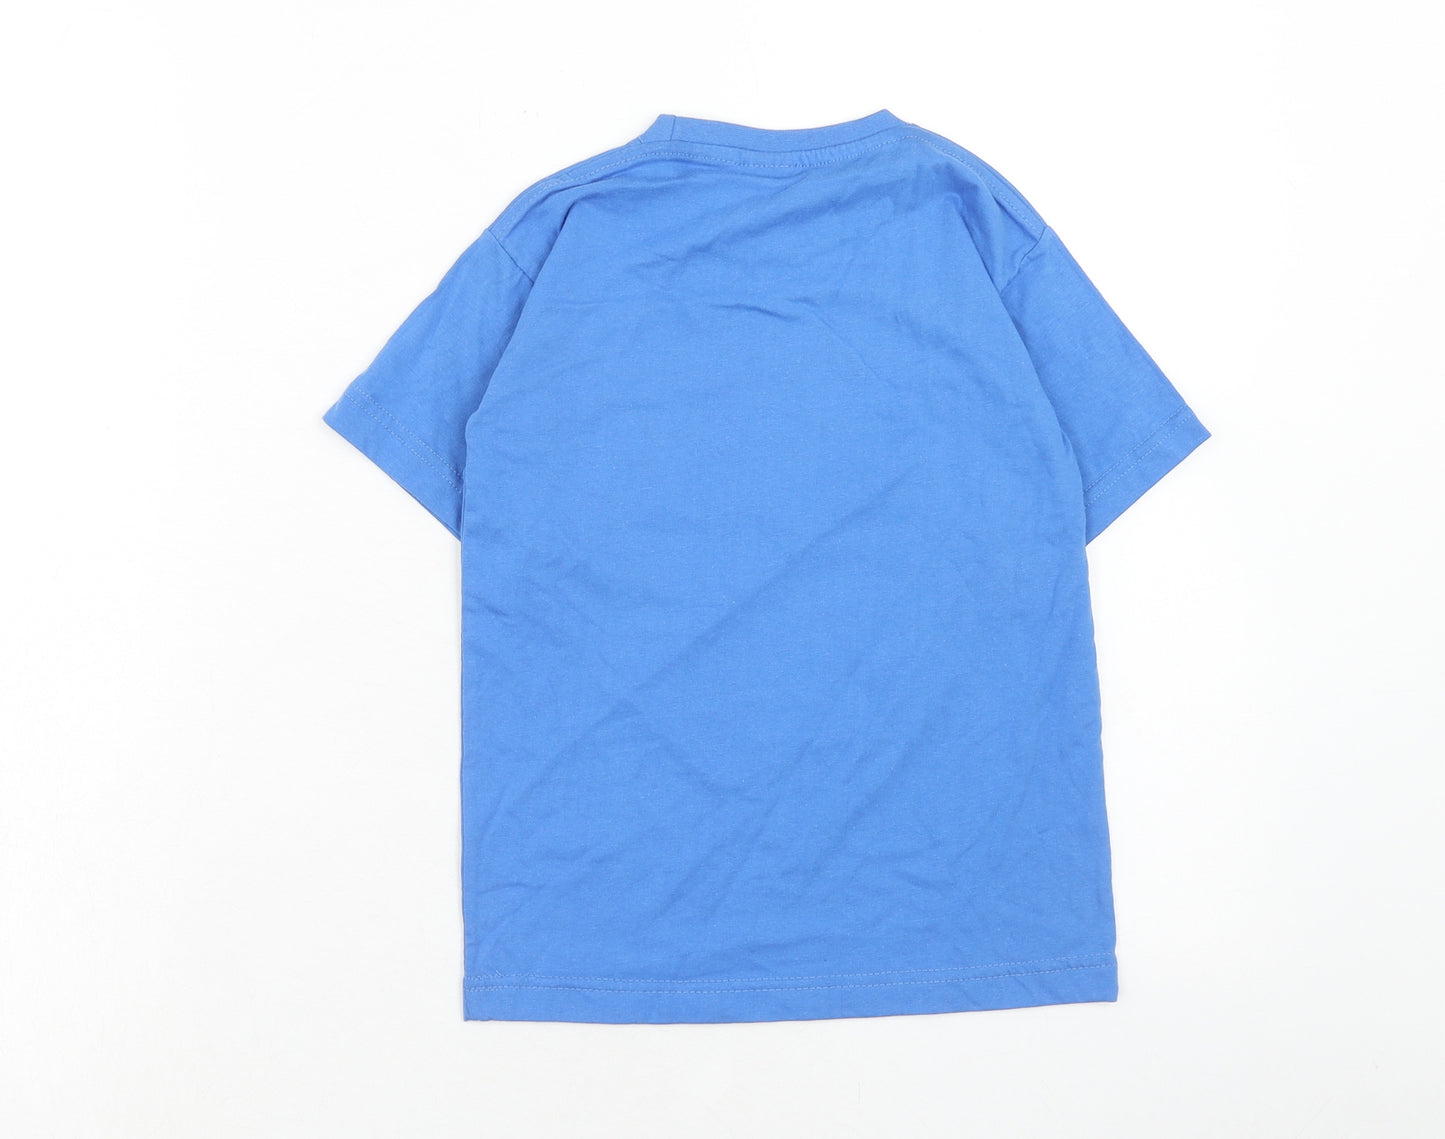 Crocodile Boys Blue Cotton Basic T-Shirt Size 6 Years Round Neck Pullover - Egyptian Mythology